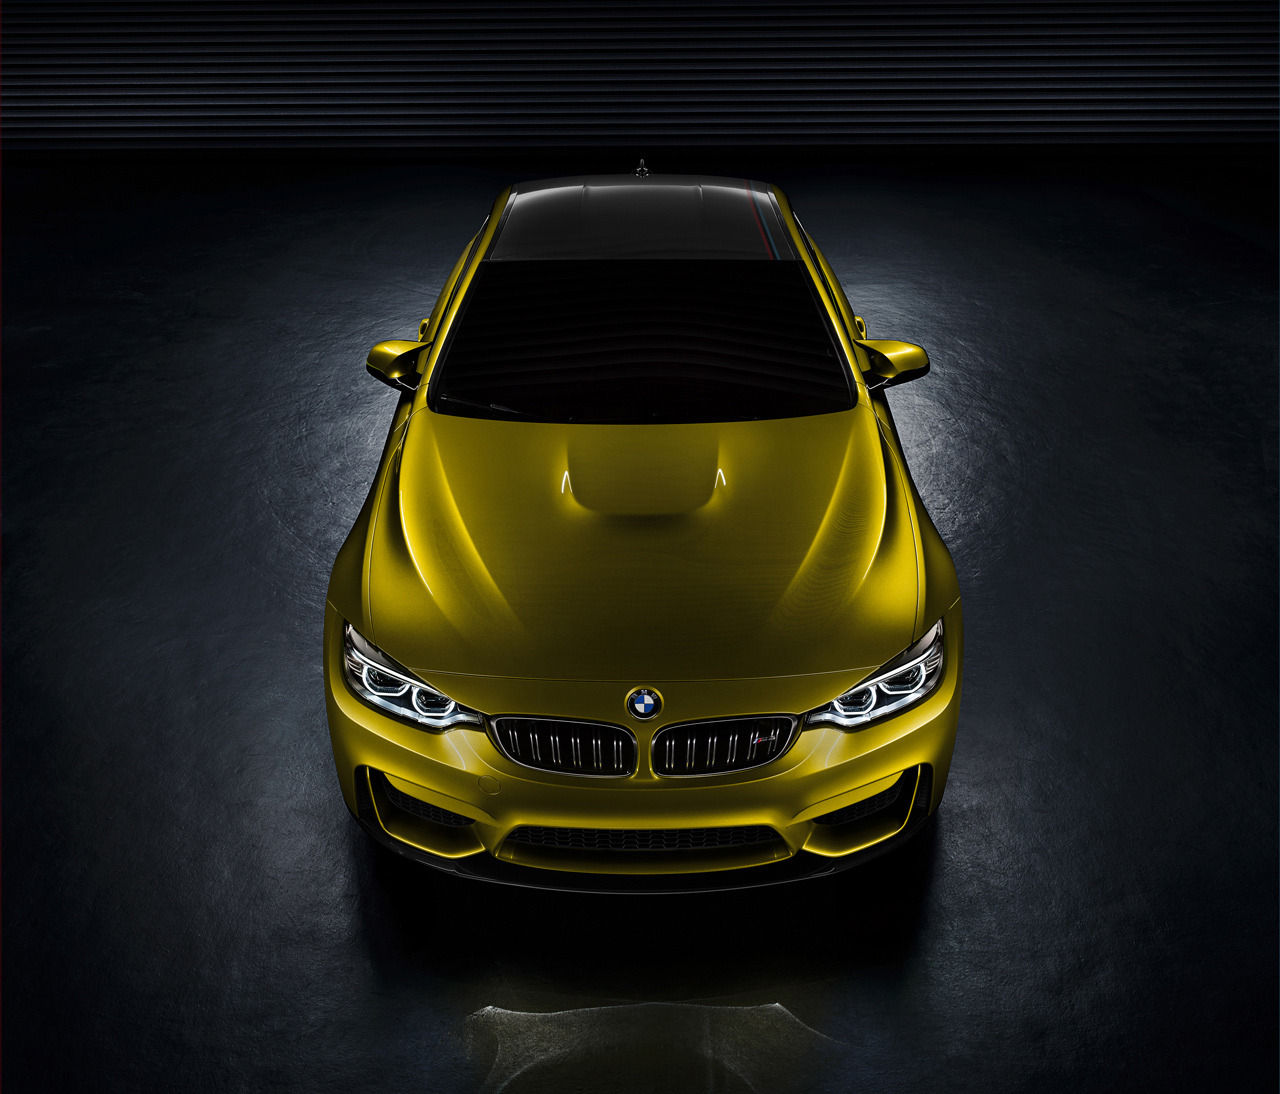 2014 BMW M4 Concept